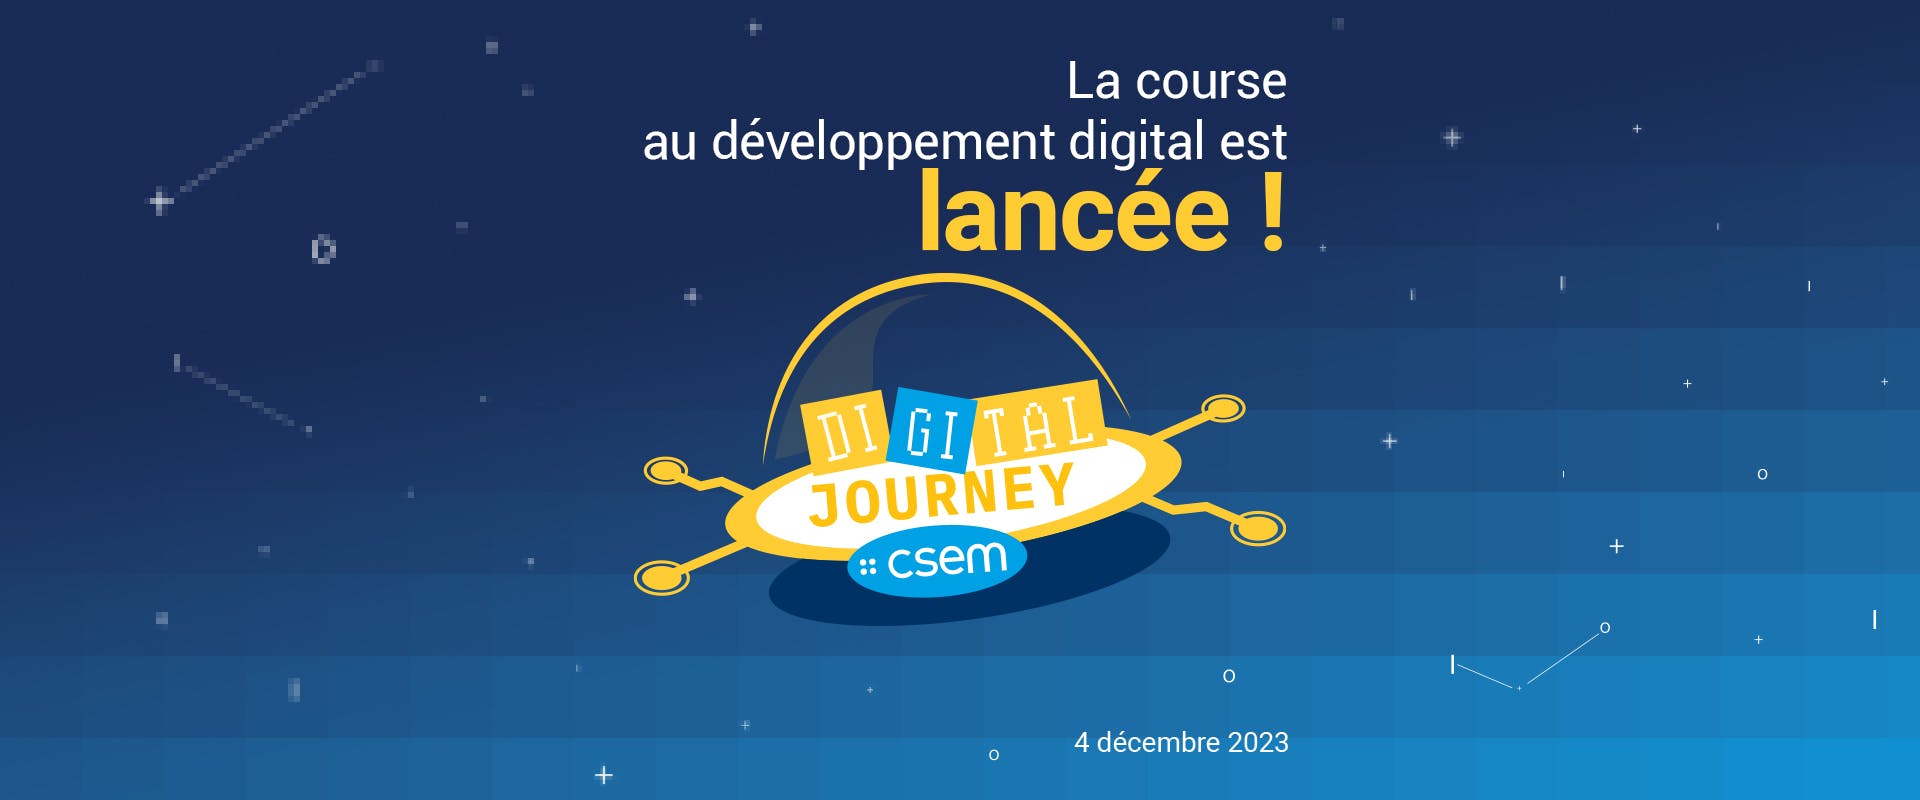 La course au développement digital est lancée !